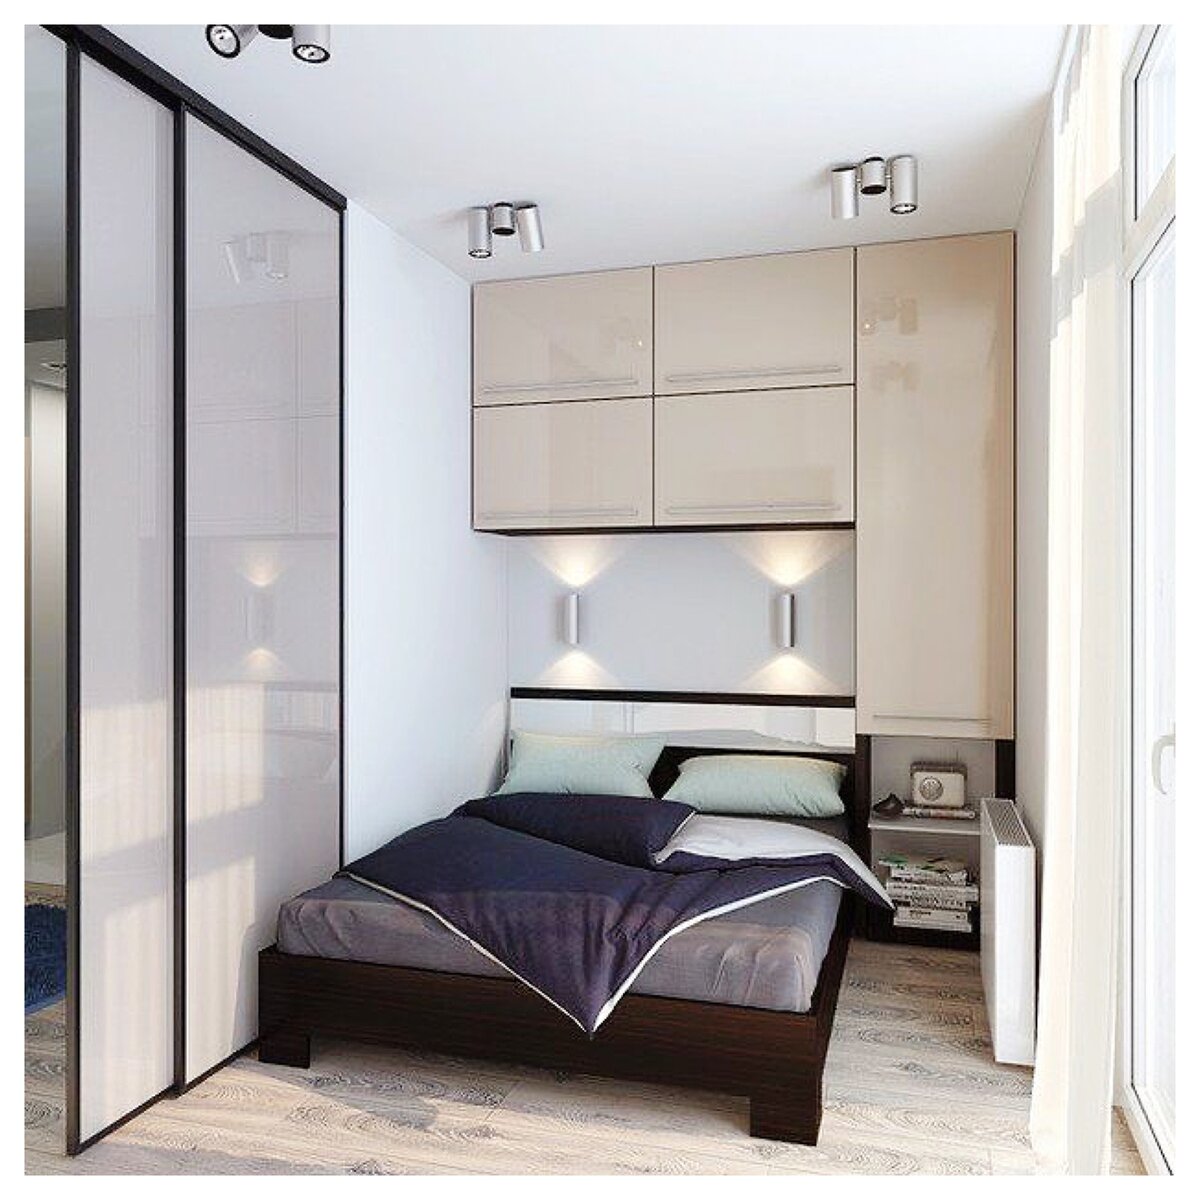 Топ-7 дизайн идей, как отделить спальное место от общей комнаты можно, кровать, место, очень, закрыть, спальное, отделить, перегородки, шкафа, просто, гостей, выполняют, общей, хорошо, такая, хочется, перегородку, подиум, вариант, места